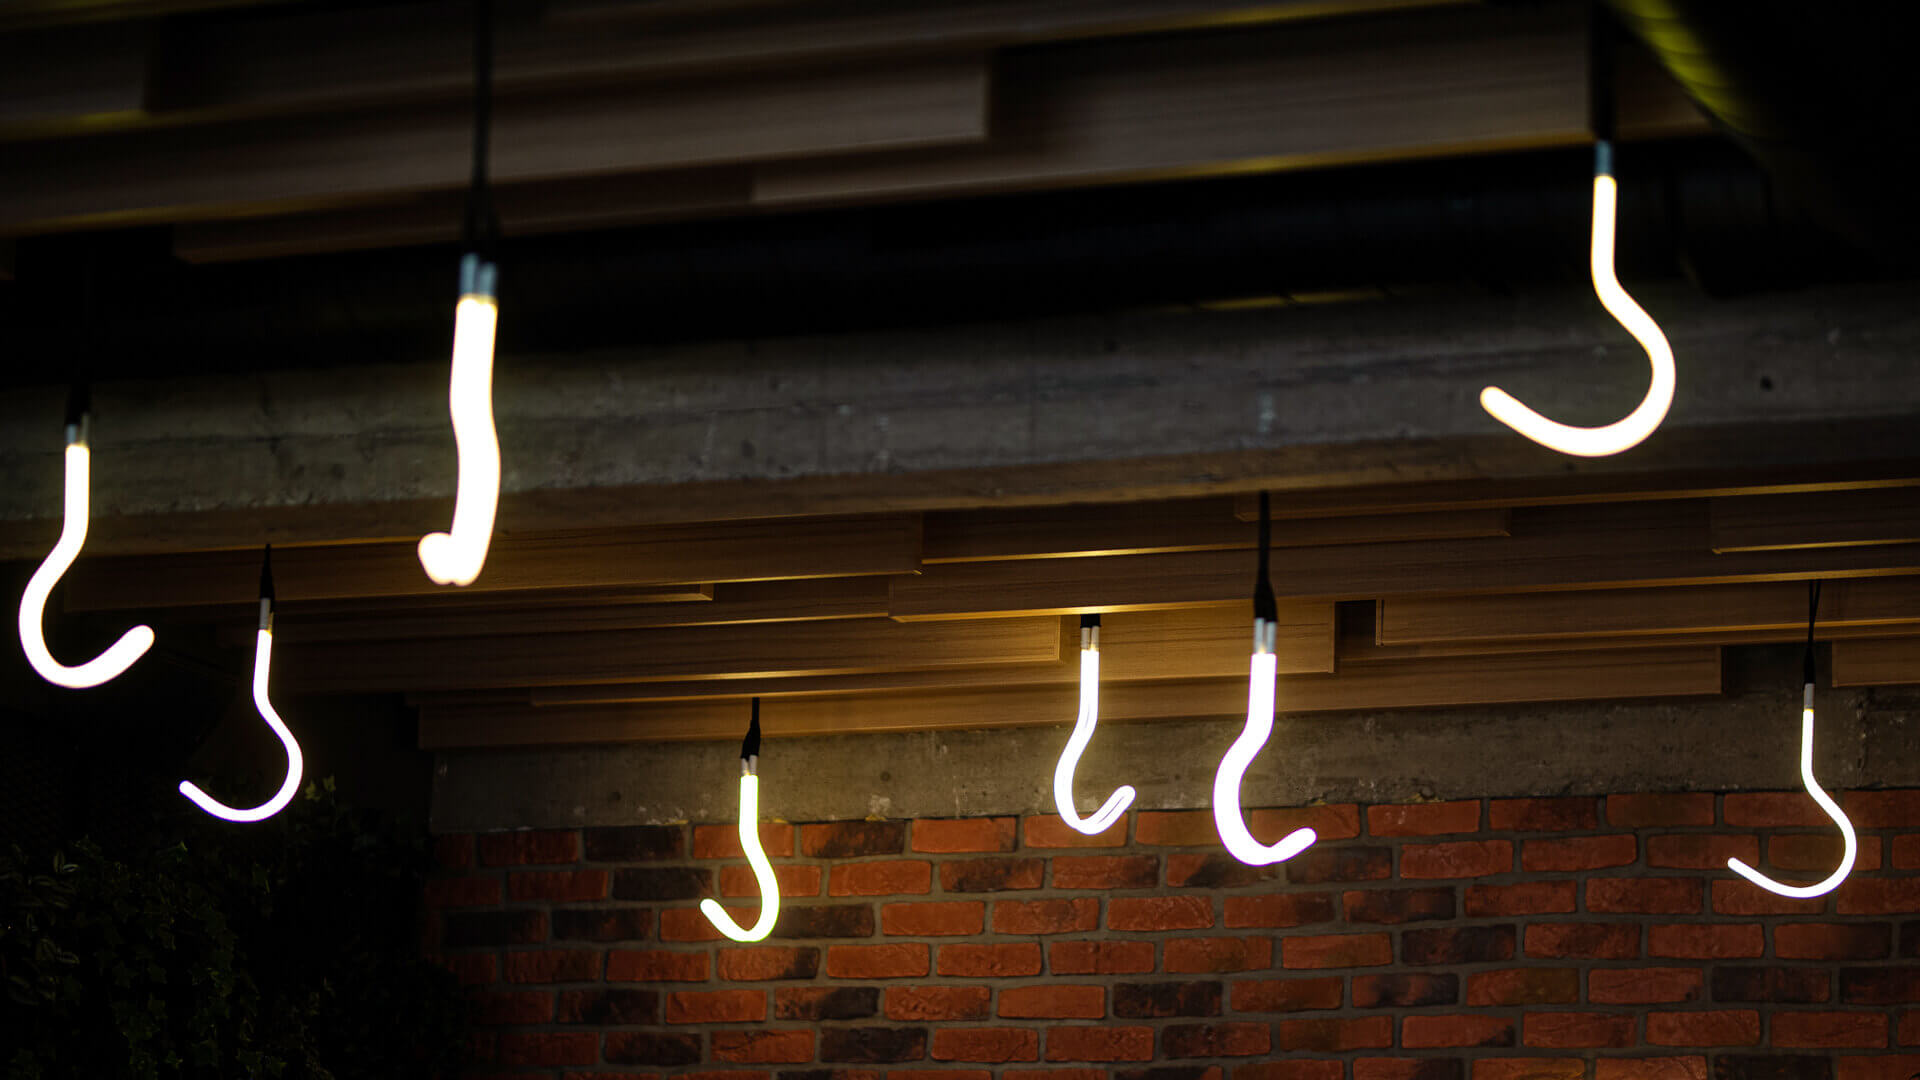 Crochets en néon - Des crochets au néon sur le plafond dans le steakhouse.